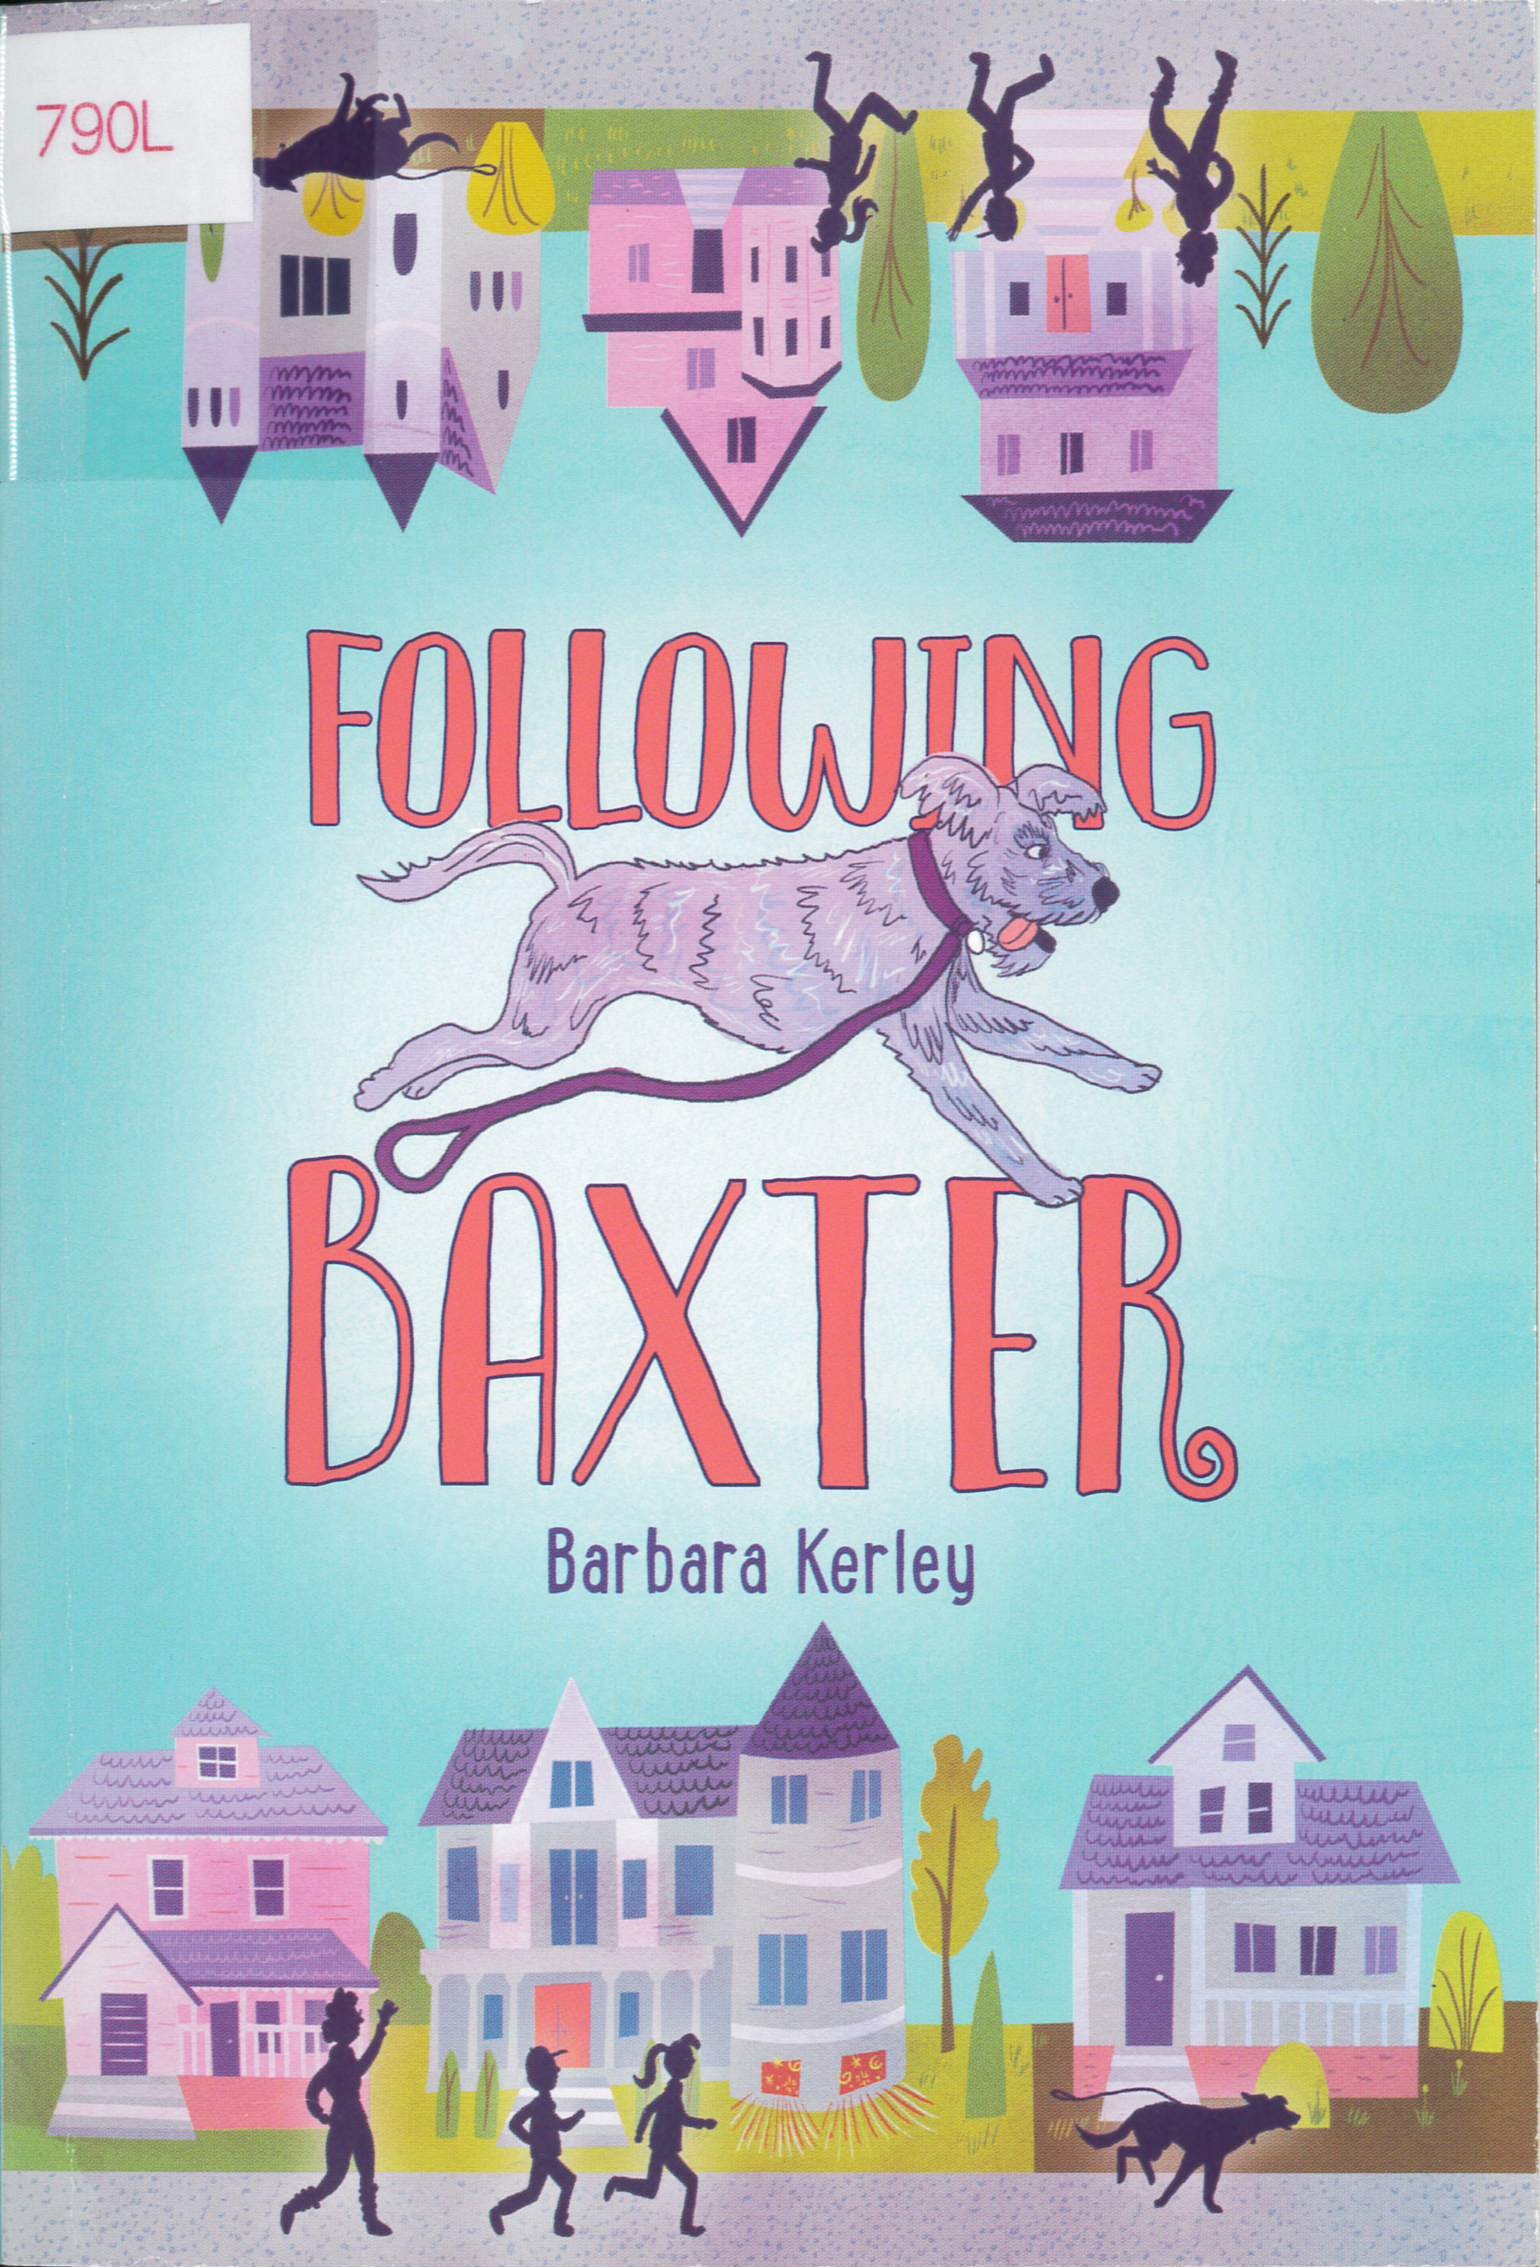 Following Baxter /